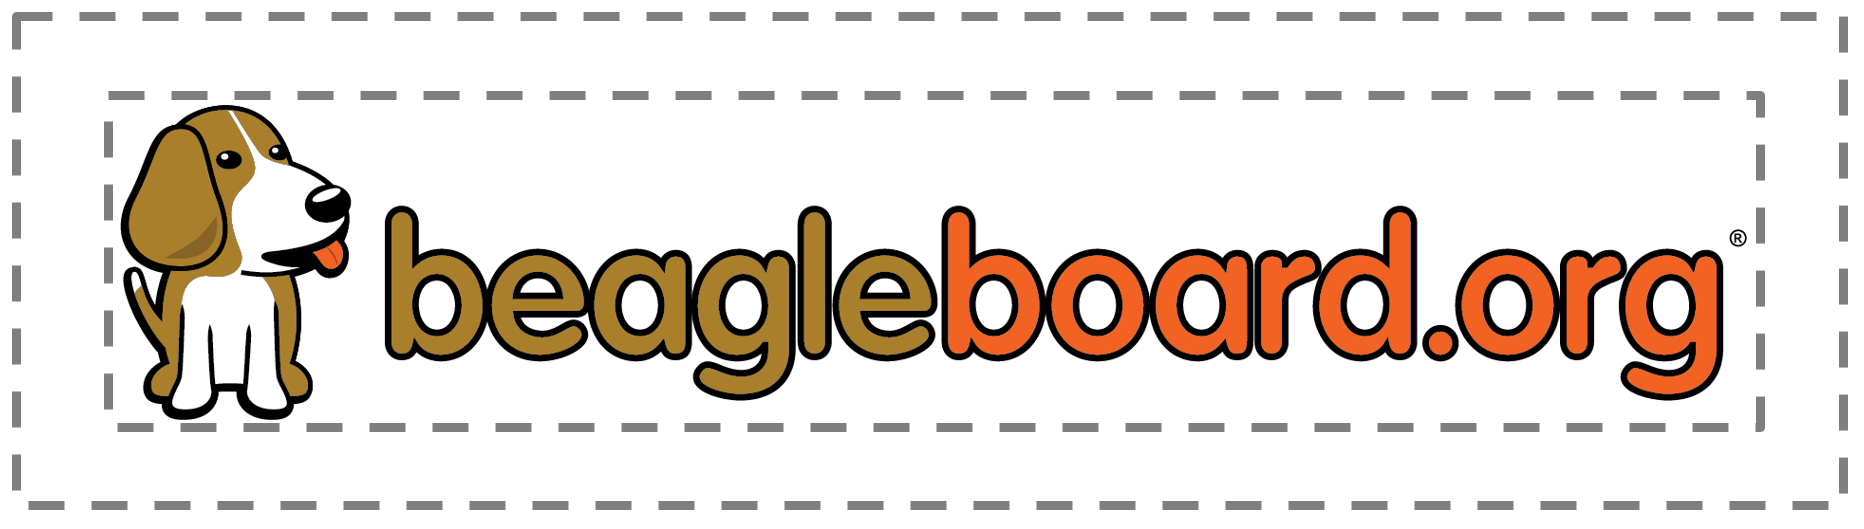 /static/images/beagleboard_org_logo.png